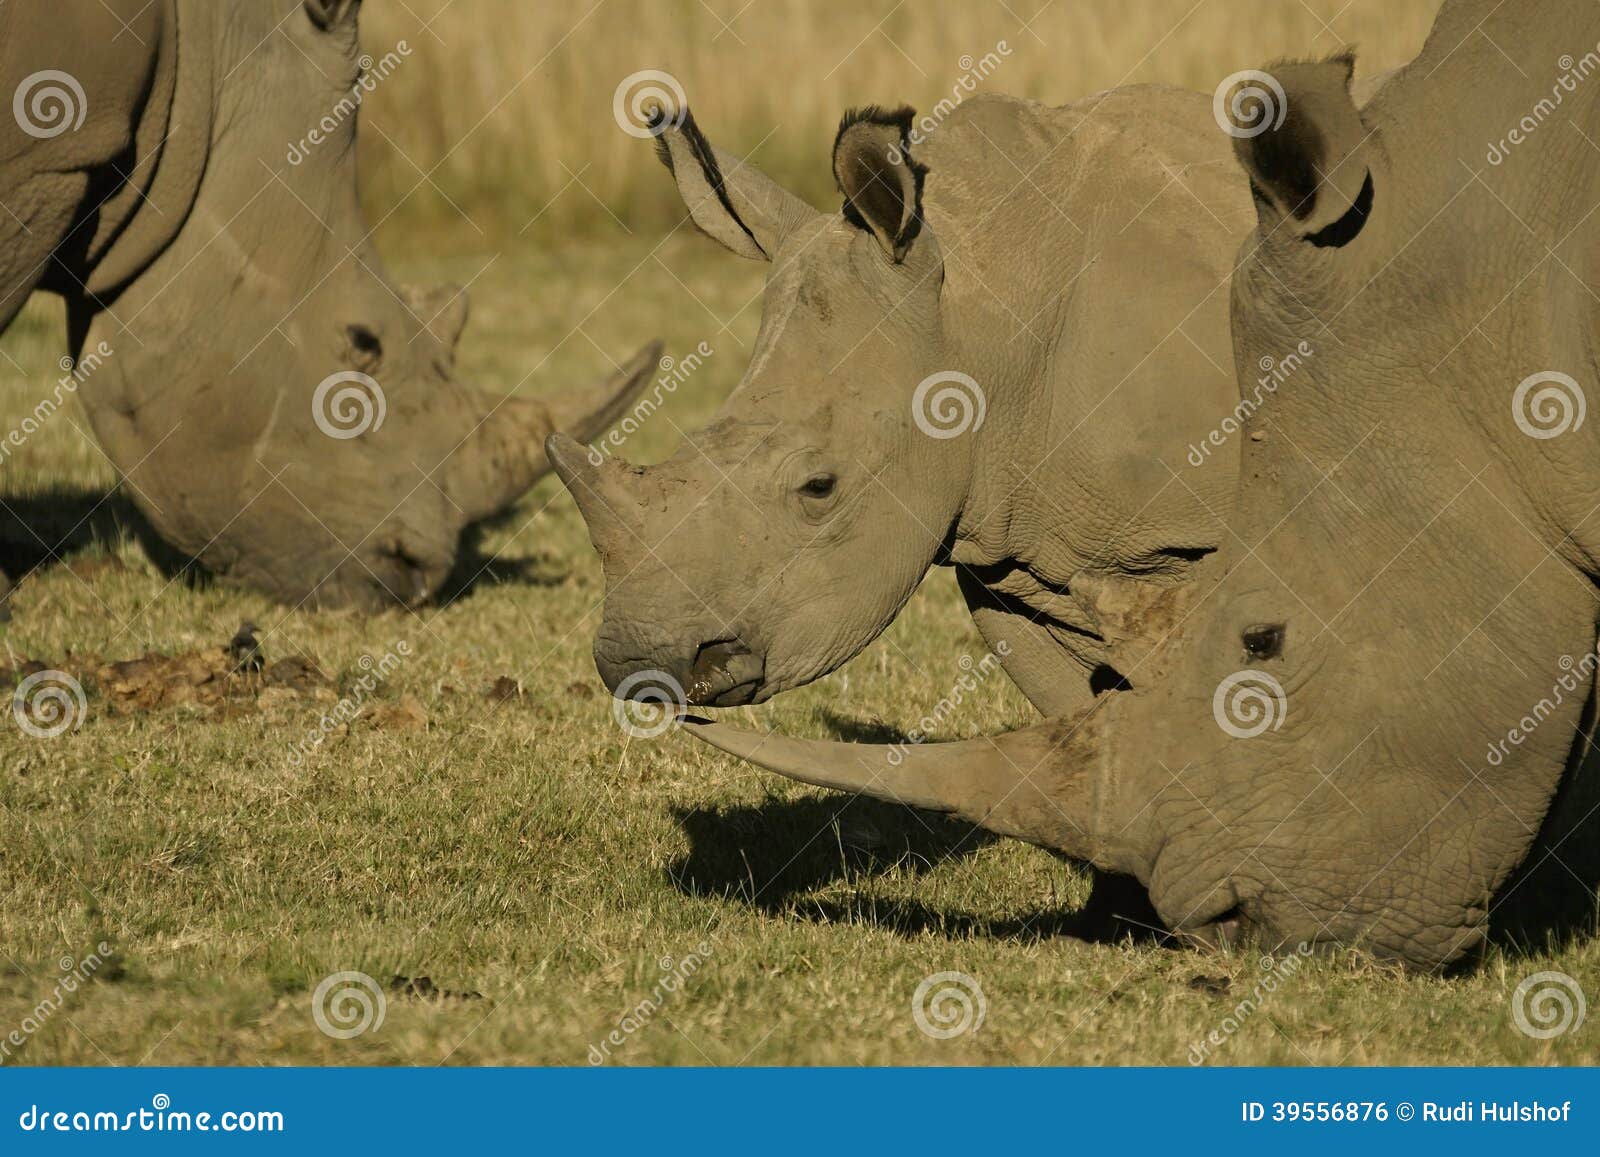 Rinoceronte bianco d'alimentazione 3. Rinoceronte bianco che si alimenta erba, fotografata sul safari nel Sudafrica